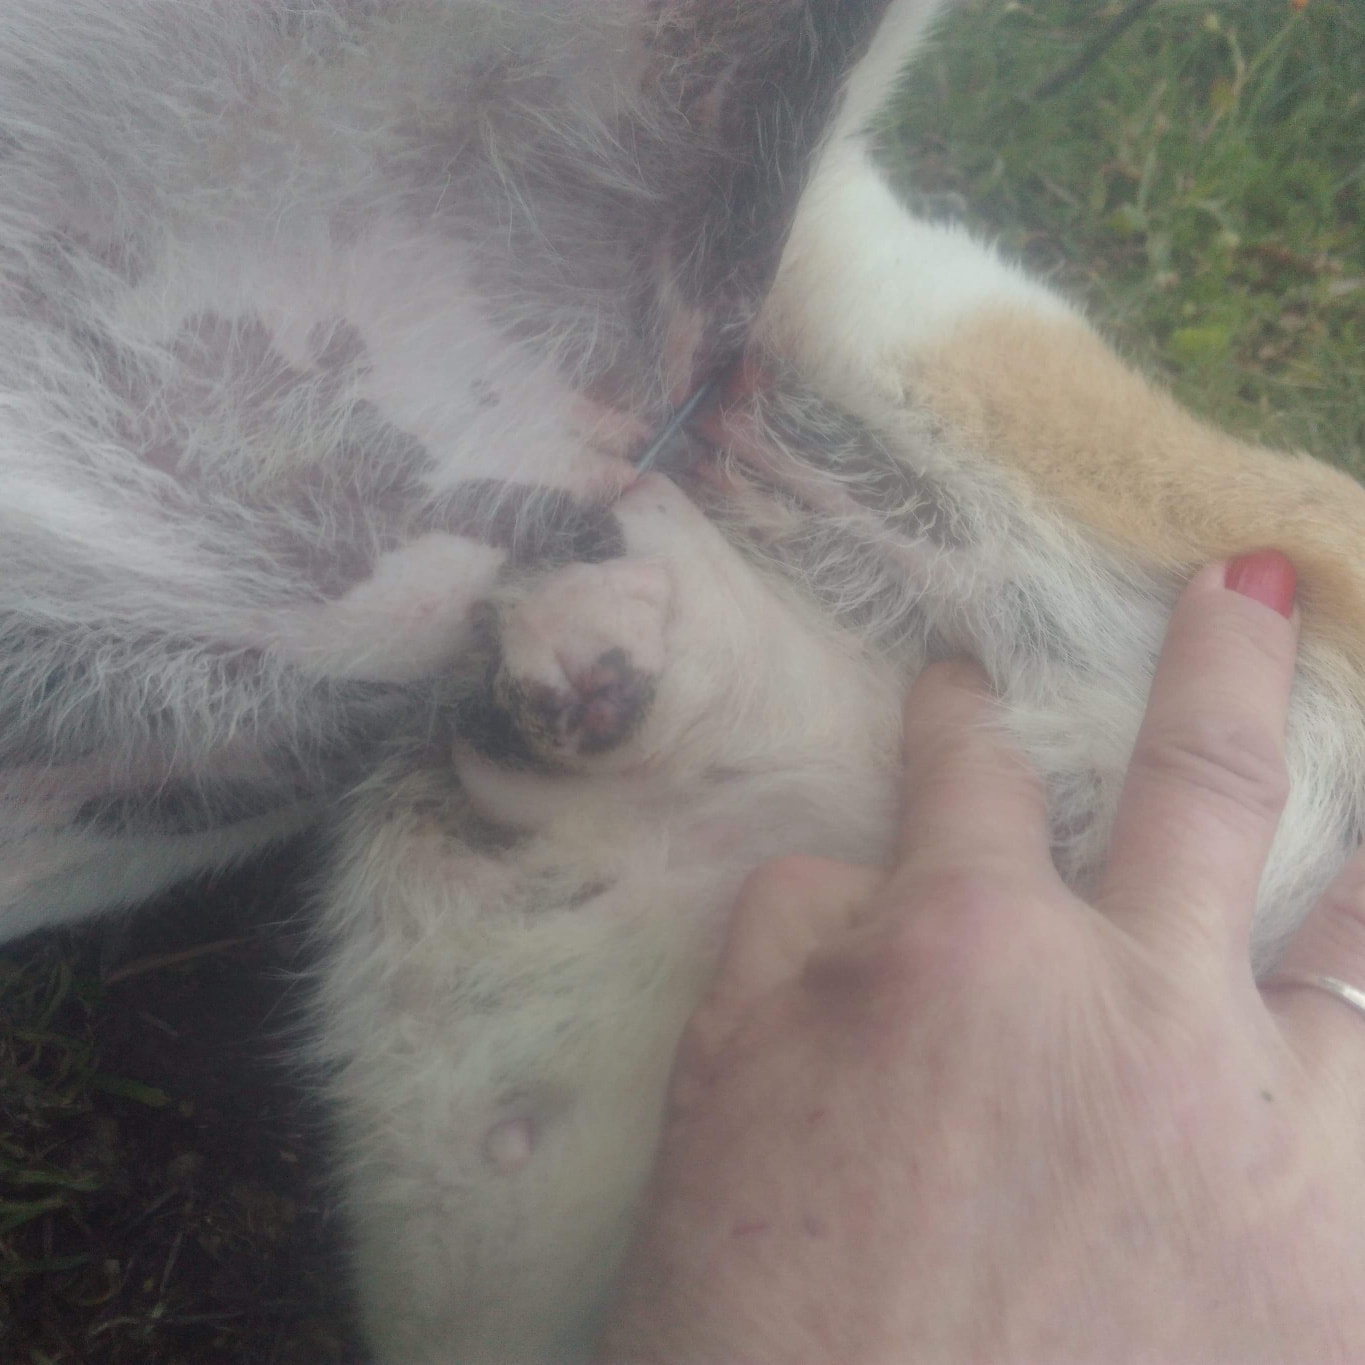 Κτηνωδία στον Βόλο: Έδεσαν με σύρμα αδέσποτο ζώο για να πεθάνει με φρικτούς πόνους (φωτο)